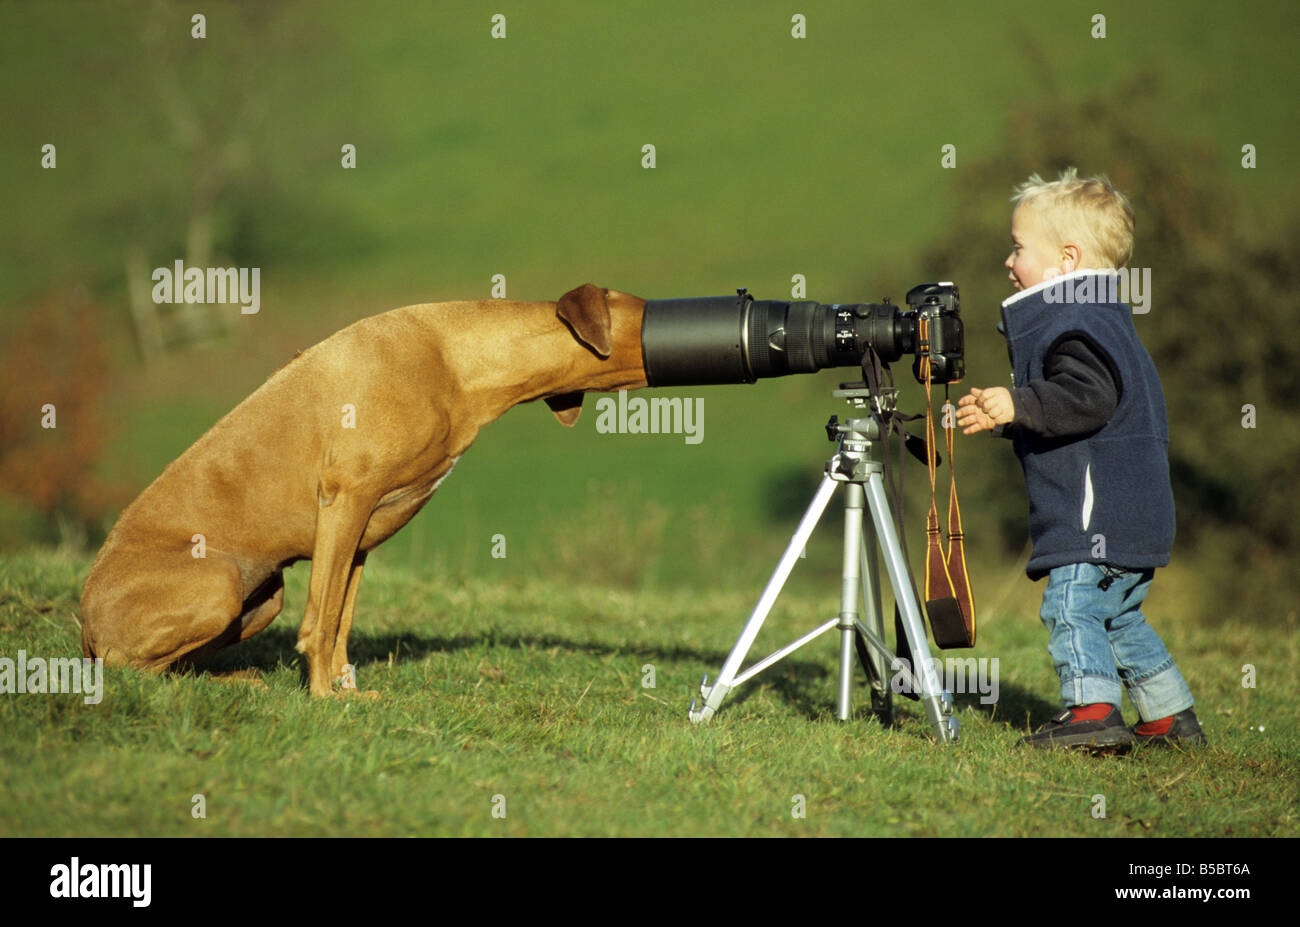 Le Rhodesian Ridgeback (Canis lupus familiaris). Jeune garçon tente de prendre une photo d'un chien adulte Banque D'Images